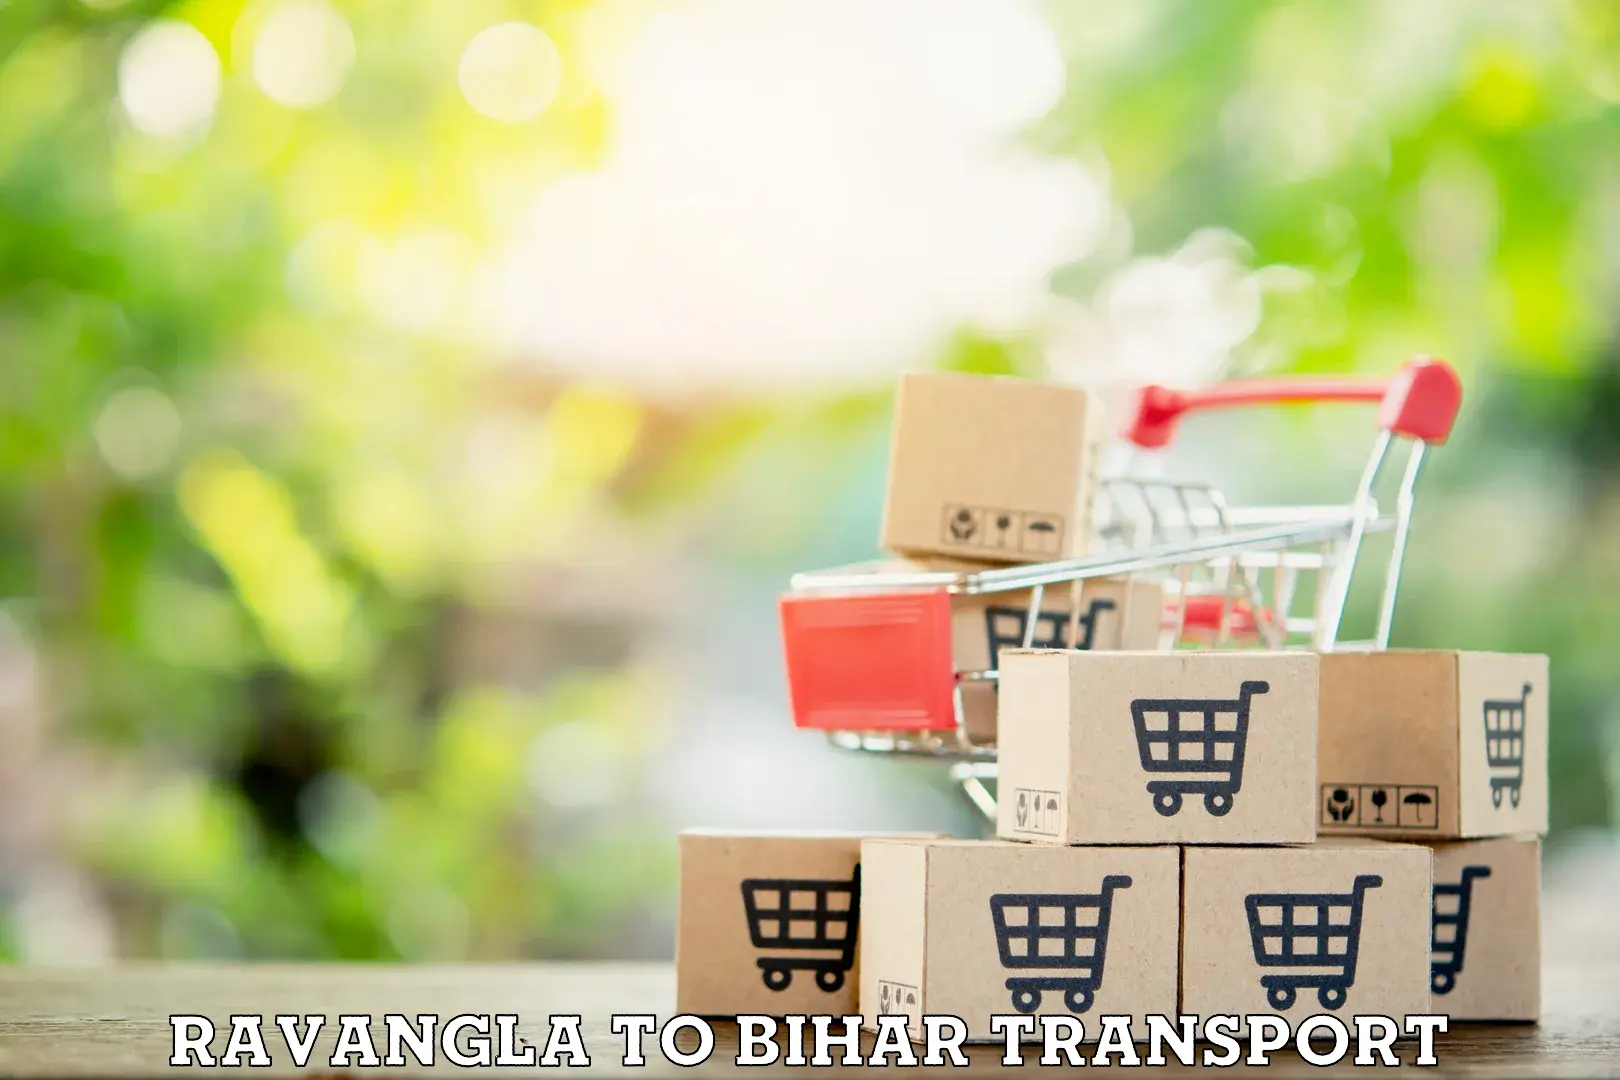 Road transport services in Ravangla to Bihar